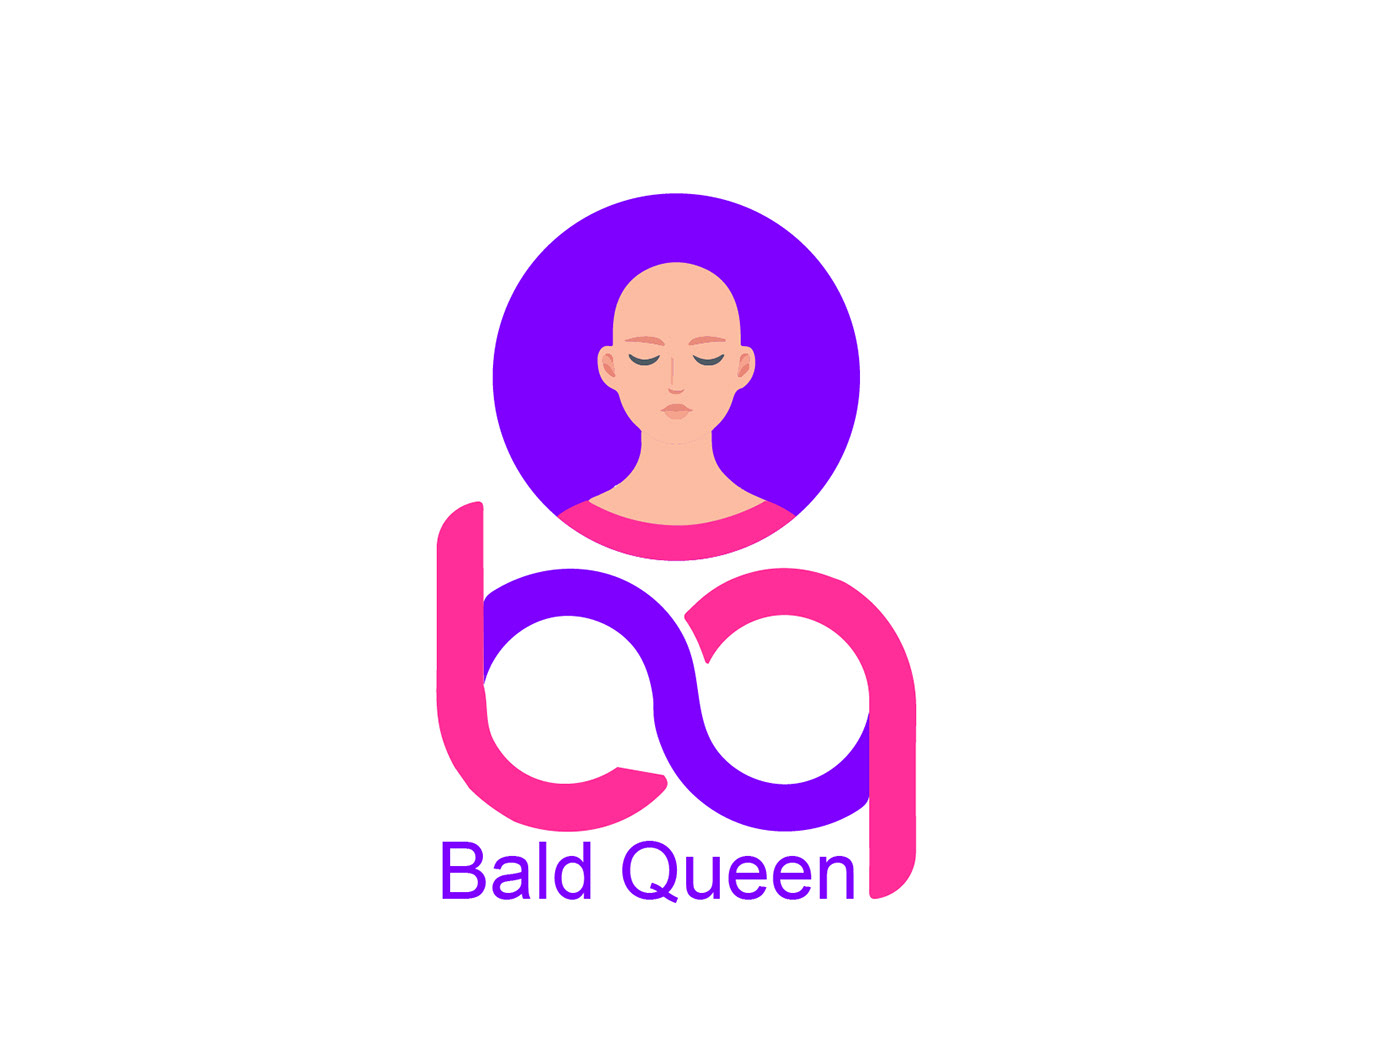 design bald queen female Logo Design brand identity Graphic Designer